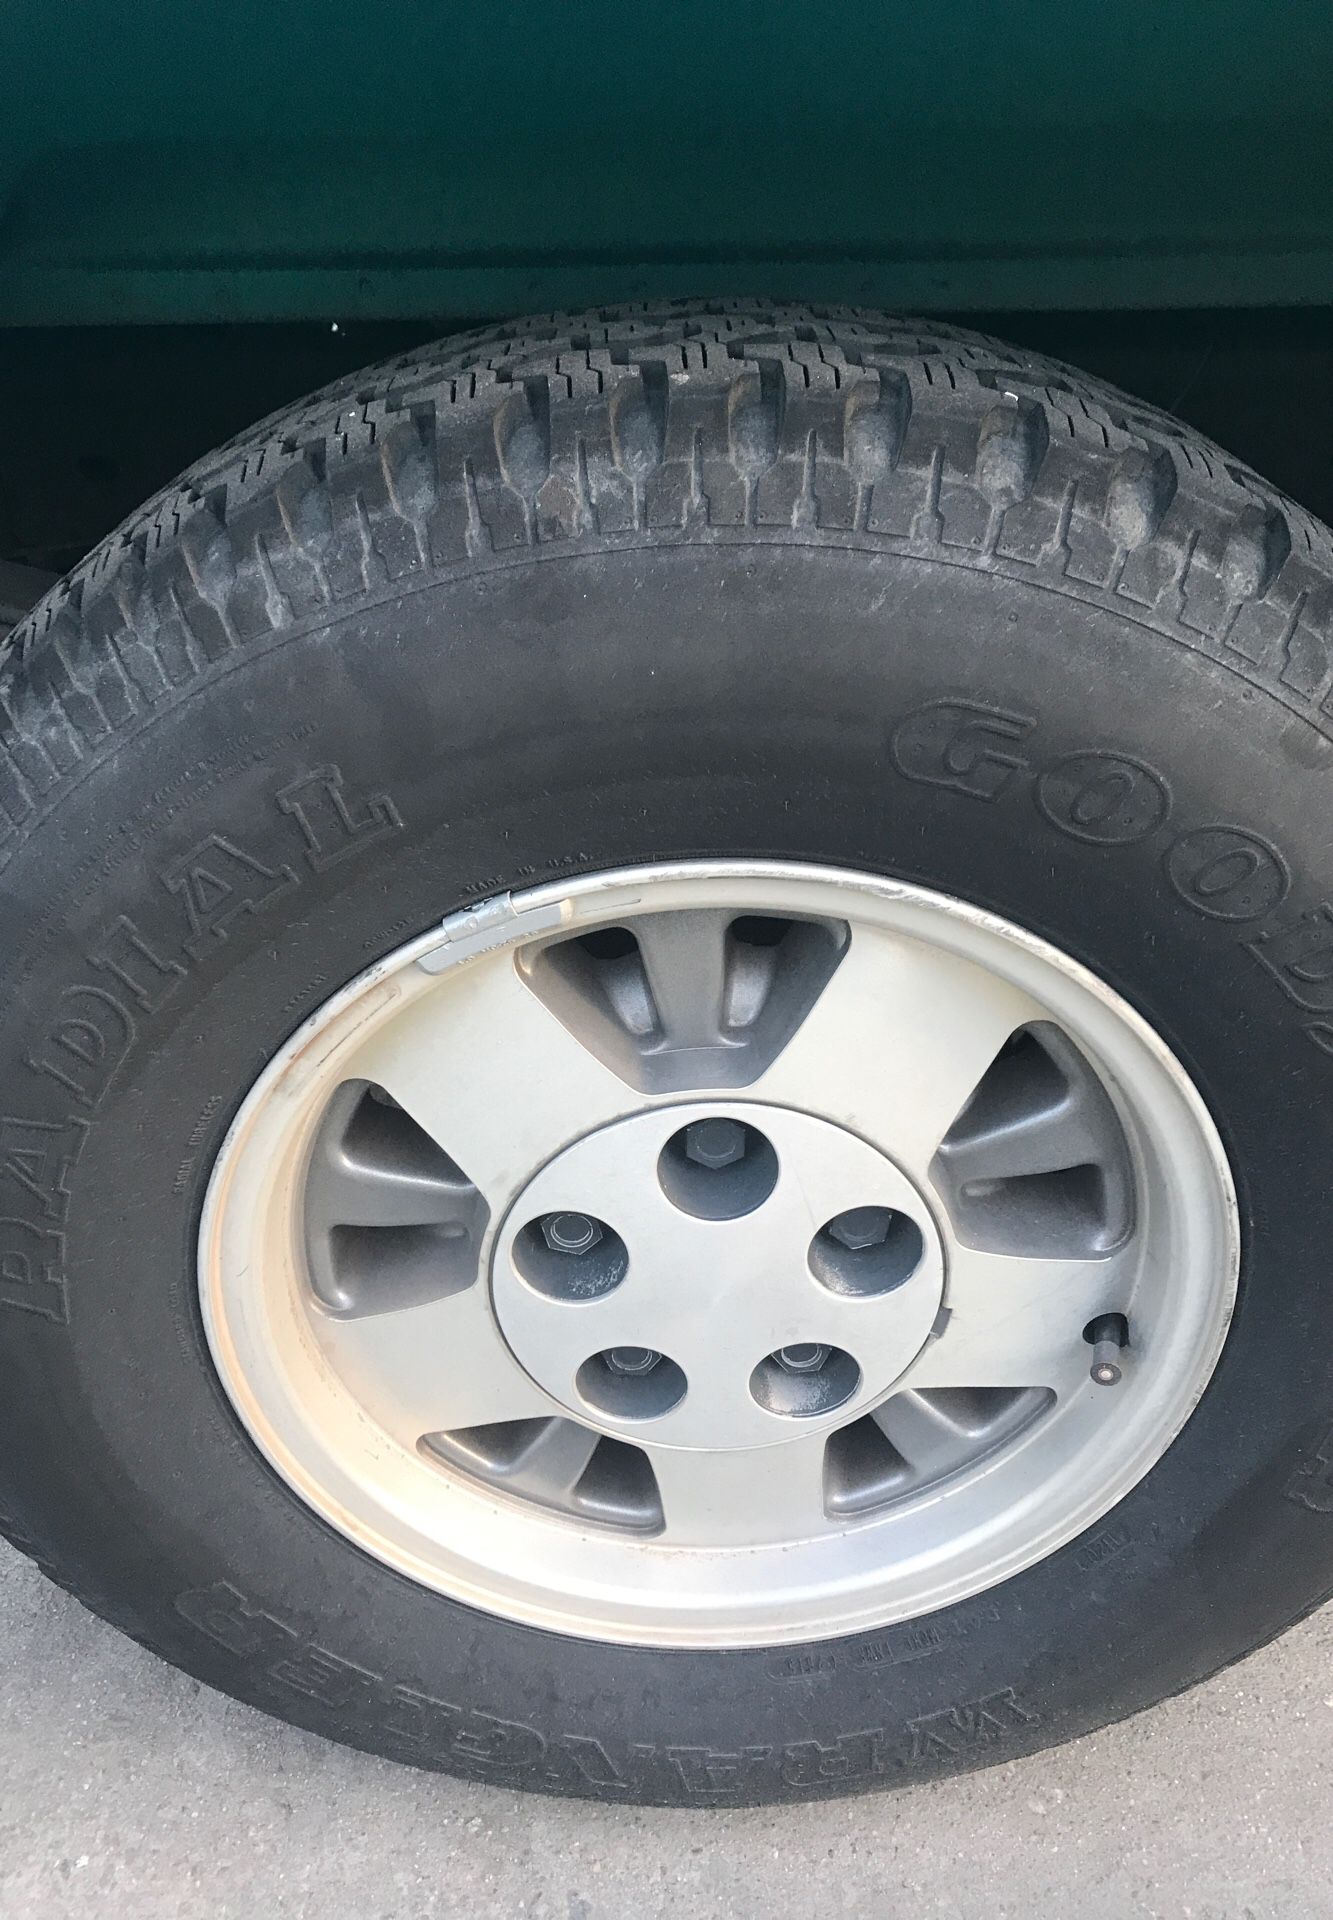 5lug Silverado Rims With Tires